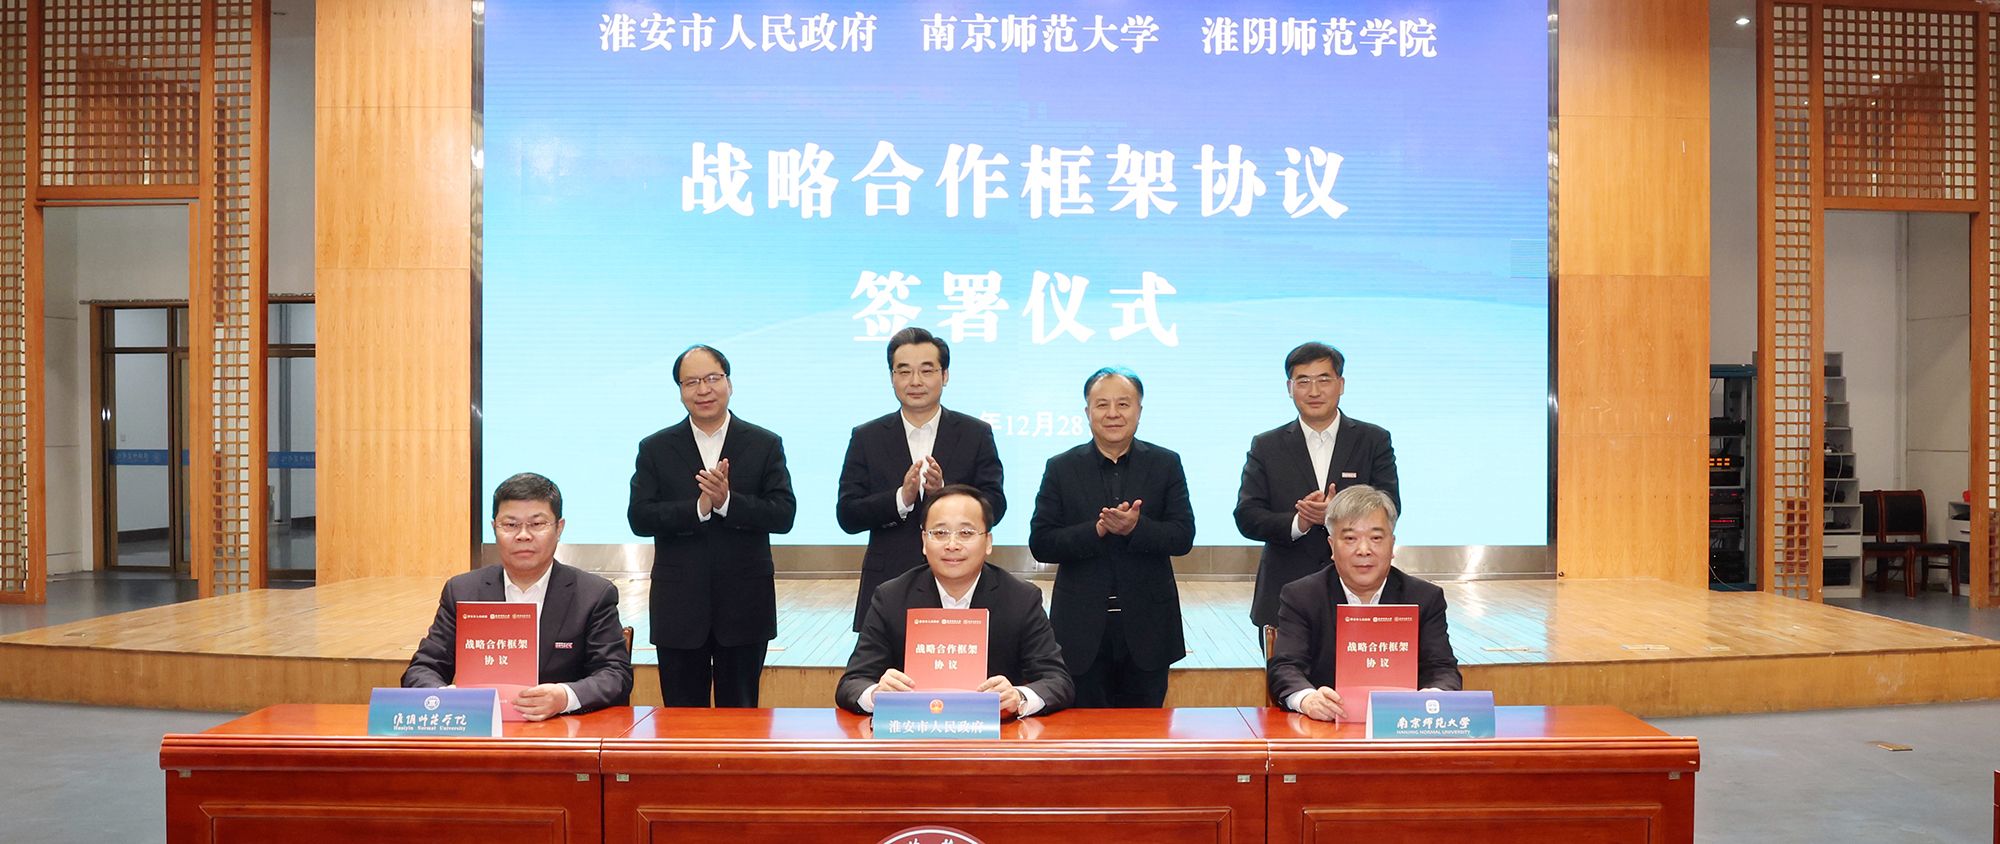 立博手机版APP与淮安市人民政府、南京师范大学签署战略合作框架协议